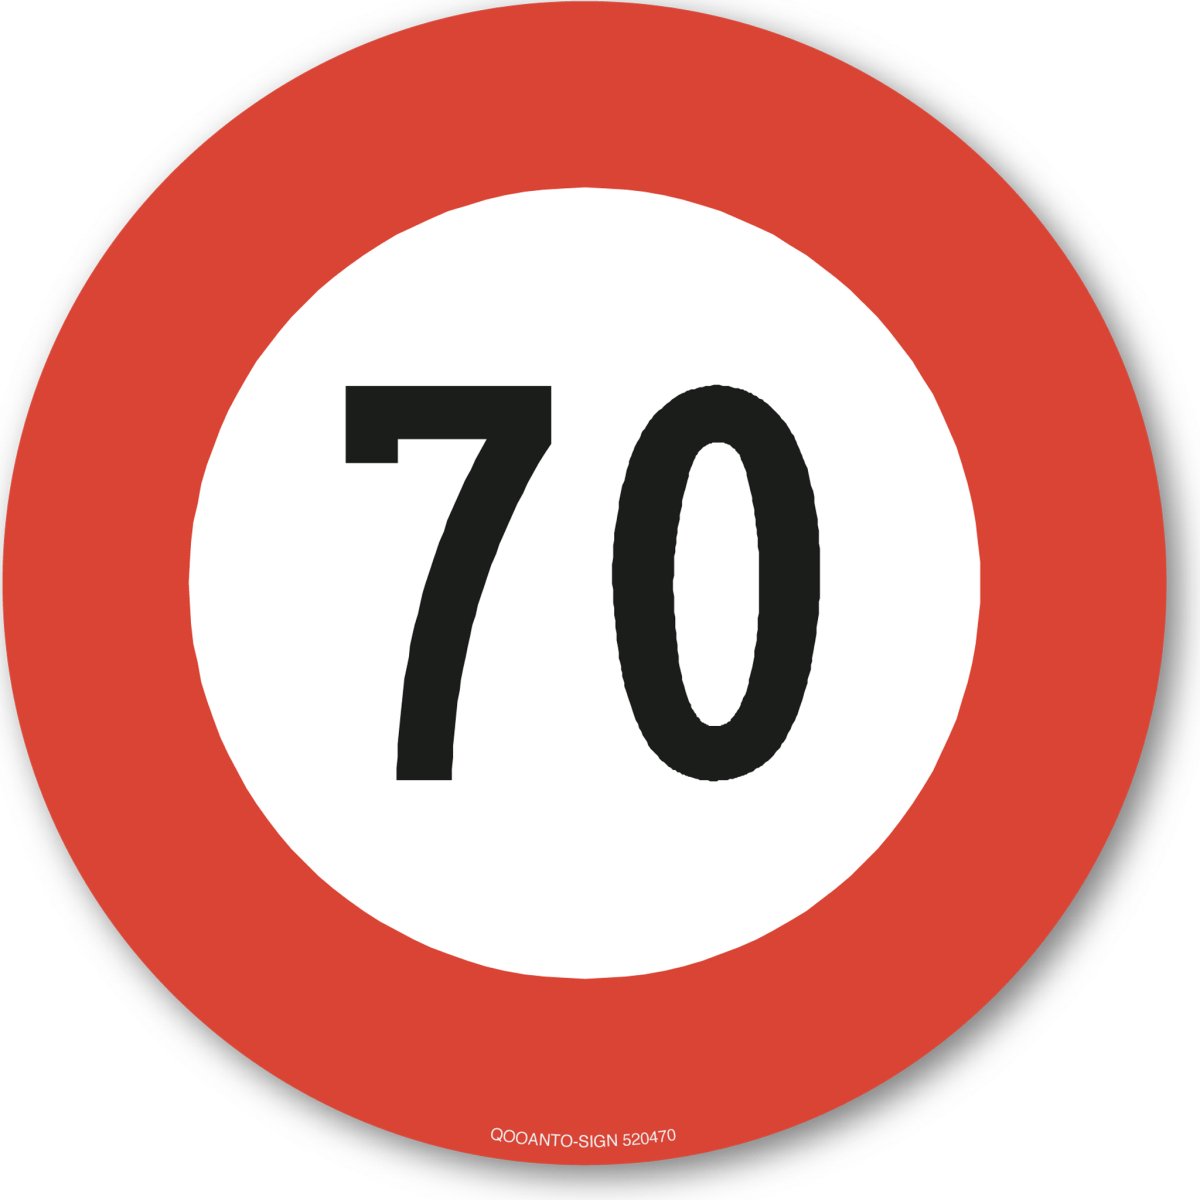 70 Höchstgeschwindigkeit Verkehrsschild oder Aufkleber aus Alu-Verbund oder Selbstklebefolie mit UV-Schutz - QOOANTO-SIGN